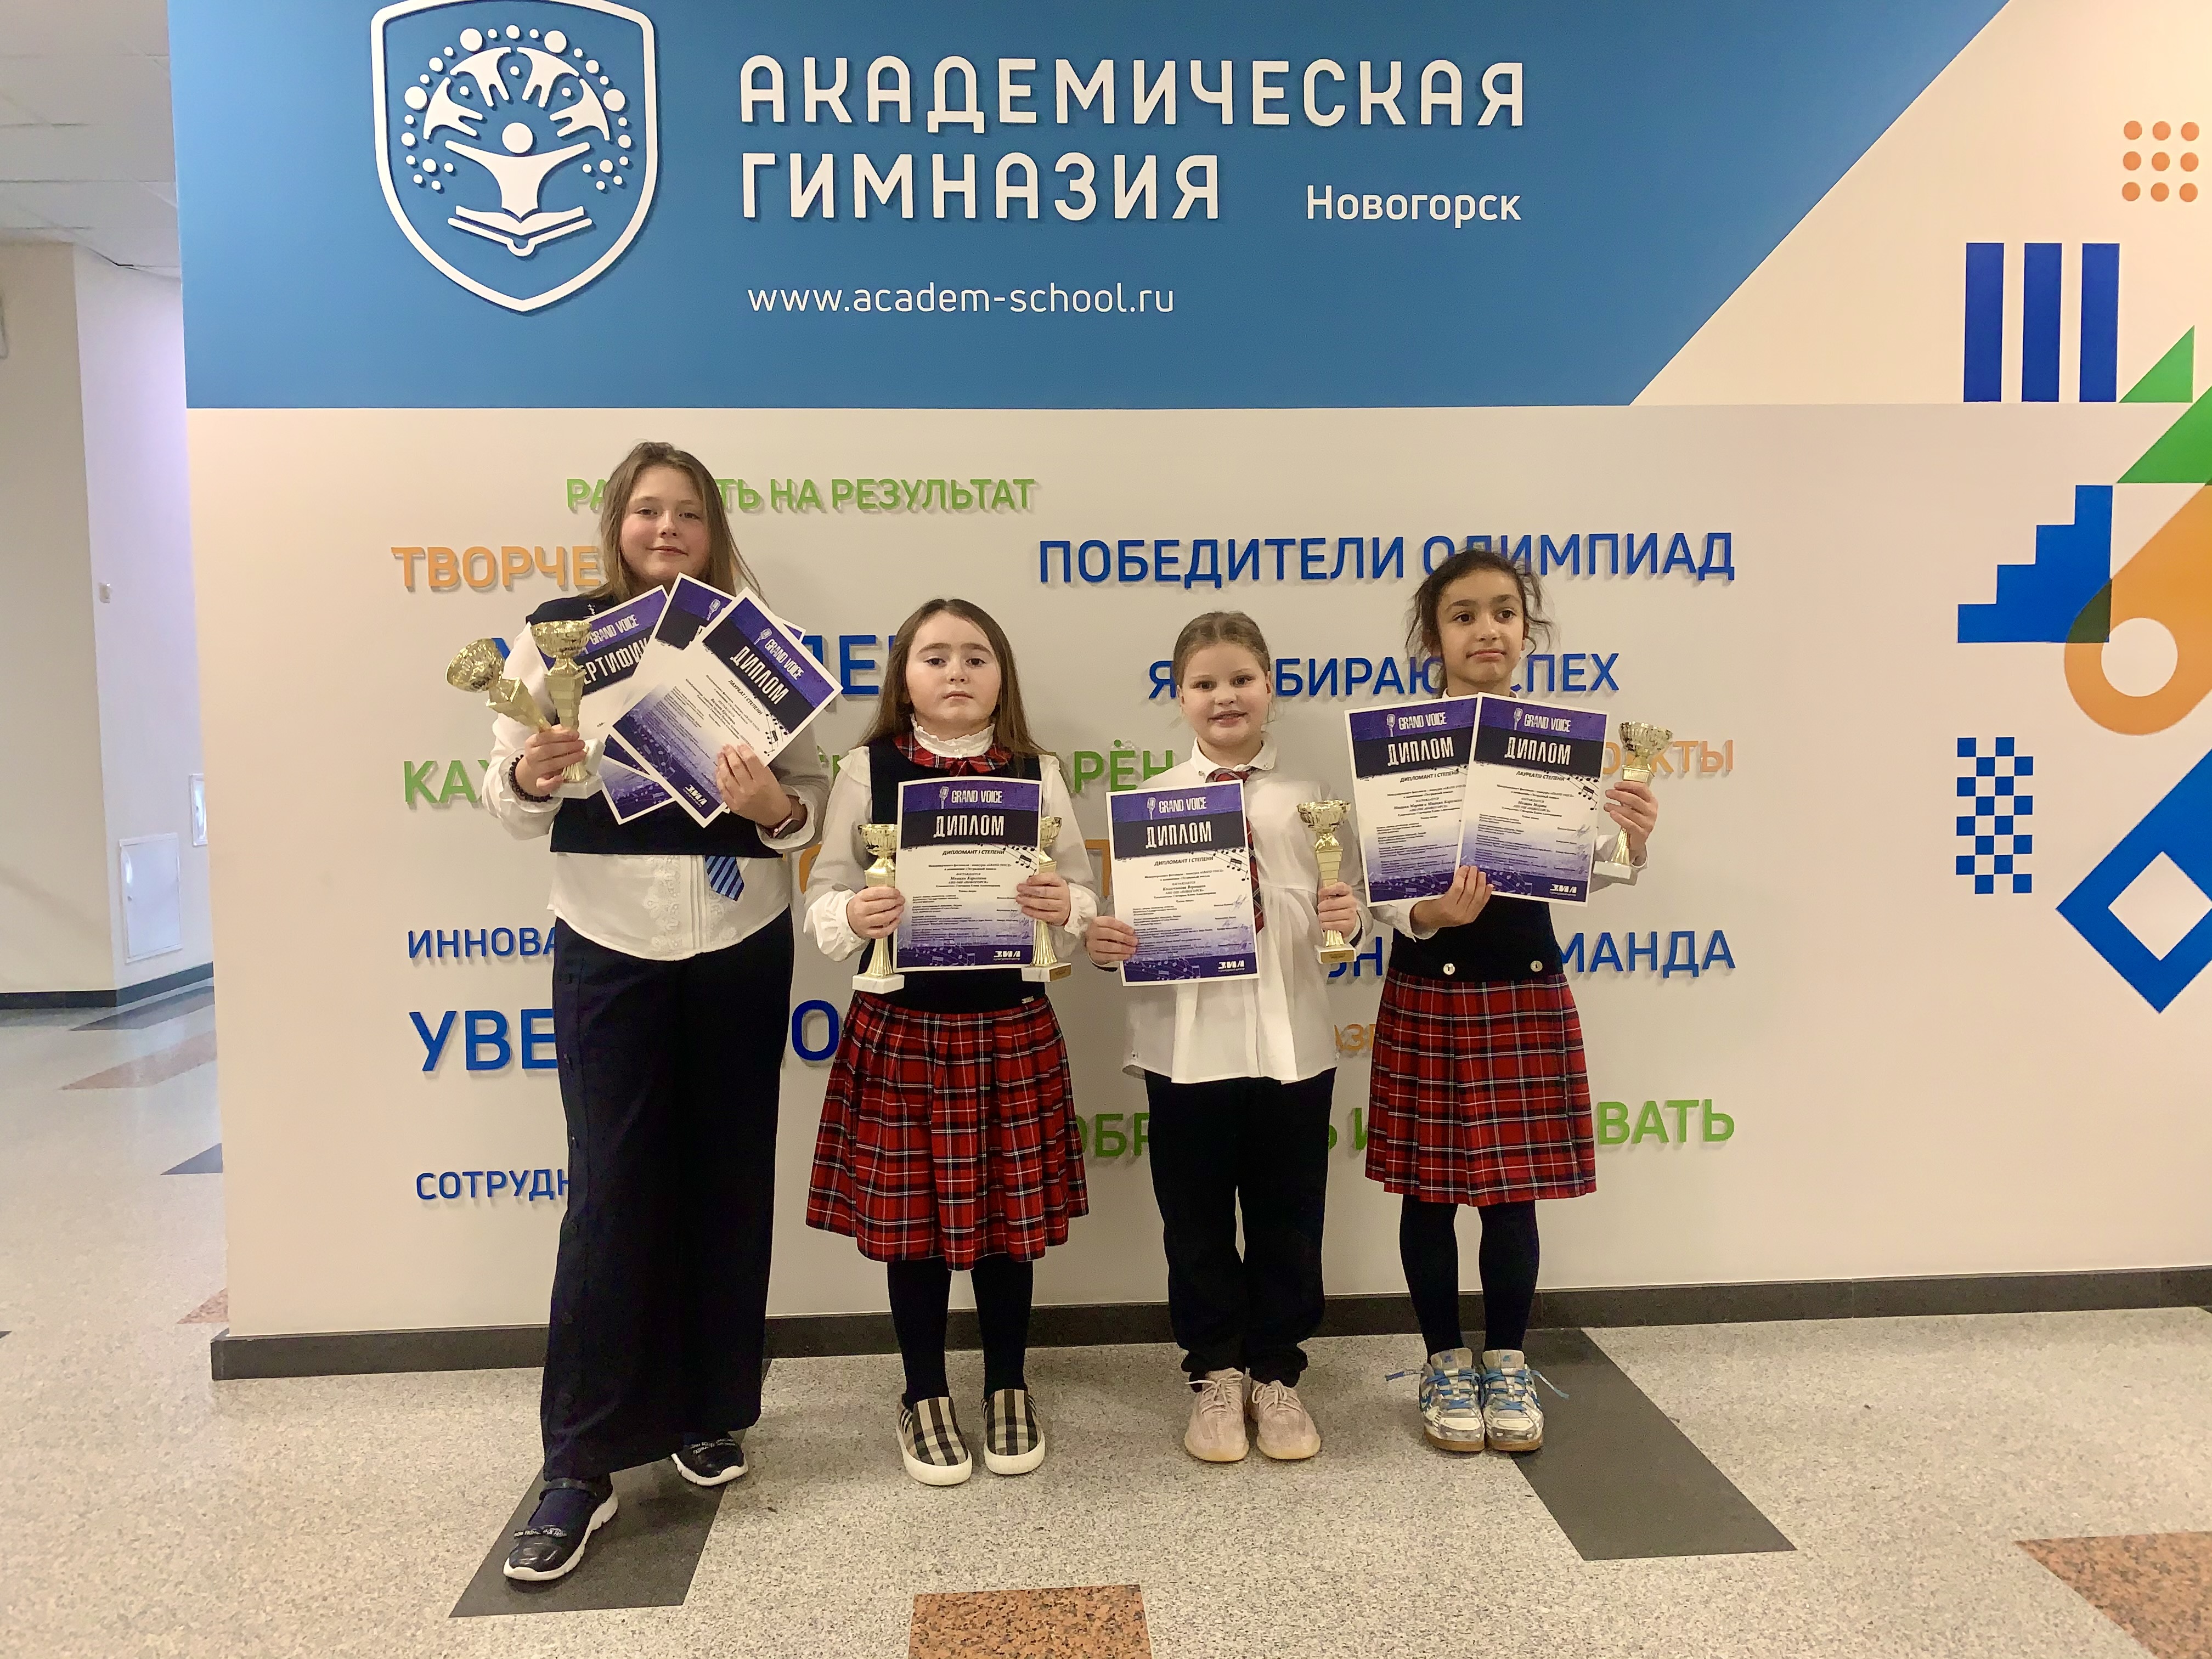 Школьники Академической гимназии «Новогорск» — дипломанты Международного Вокального Фестиваля «Grand Voice» 